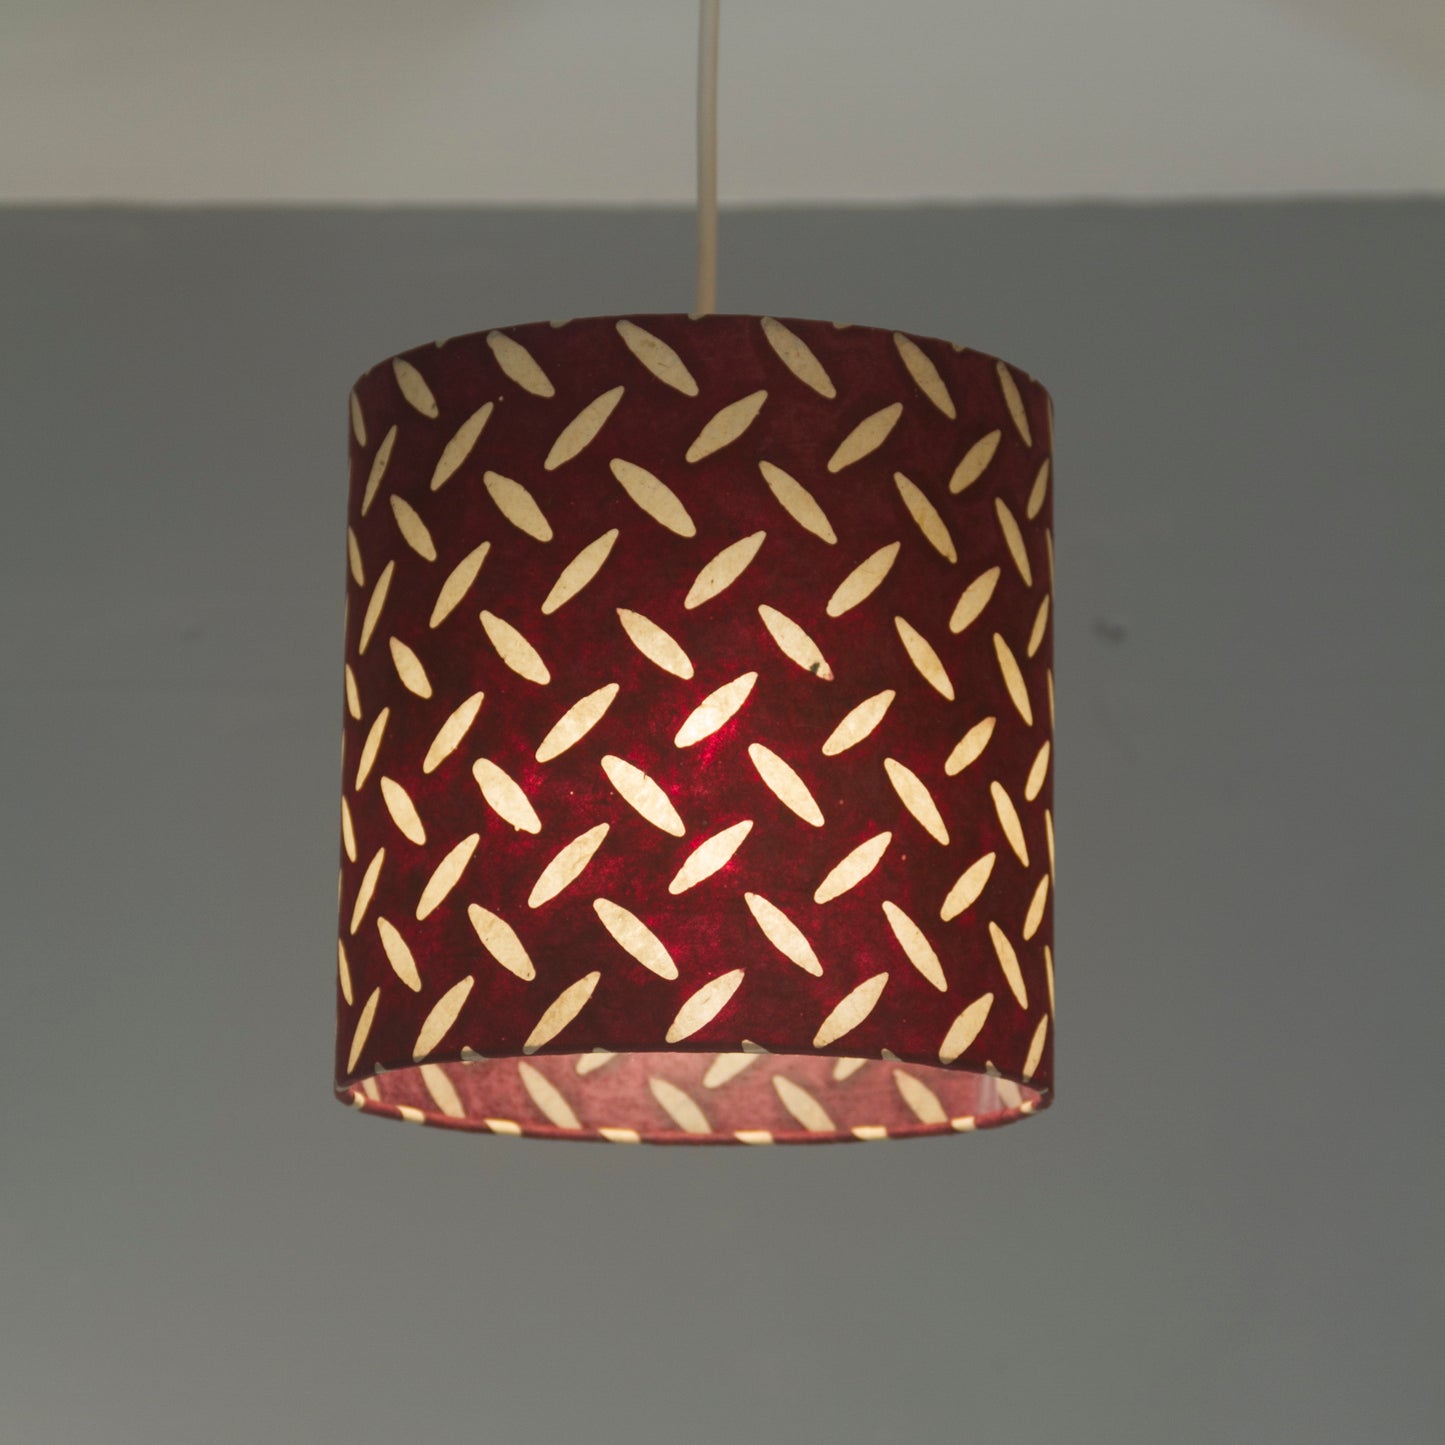 Drum Lamp Shade - P14 - Batik Tread Plate Cranberry, 50cm(d) x 25cm(h)